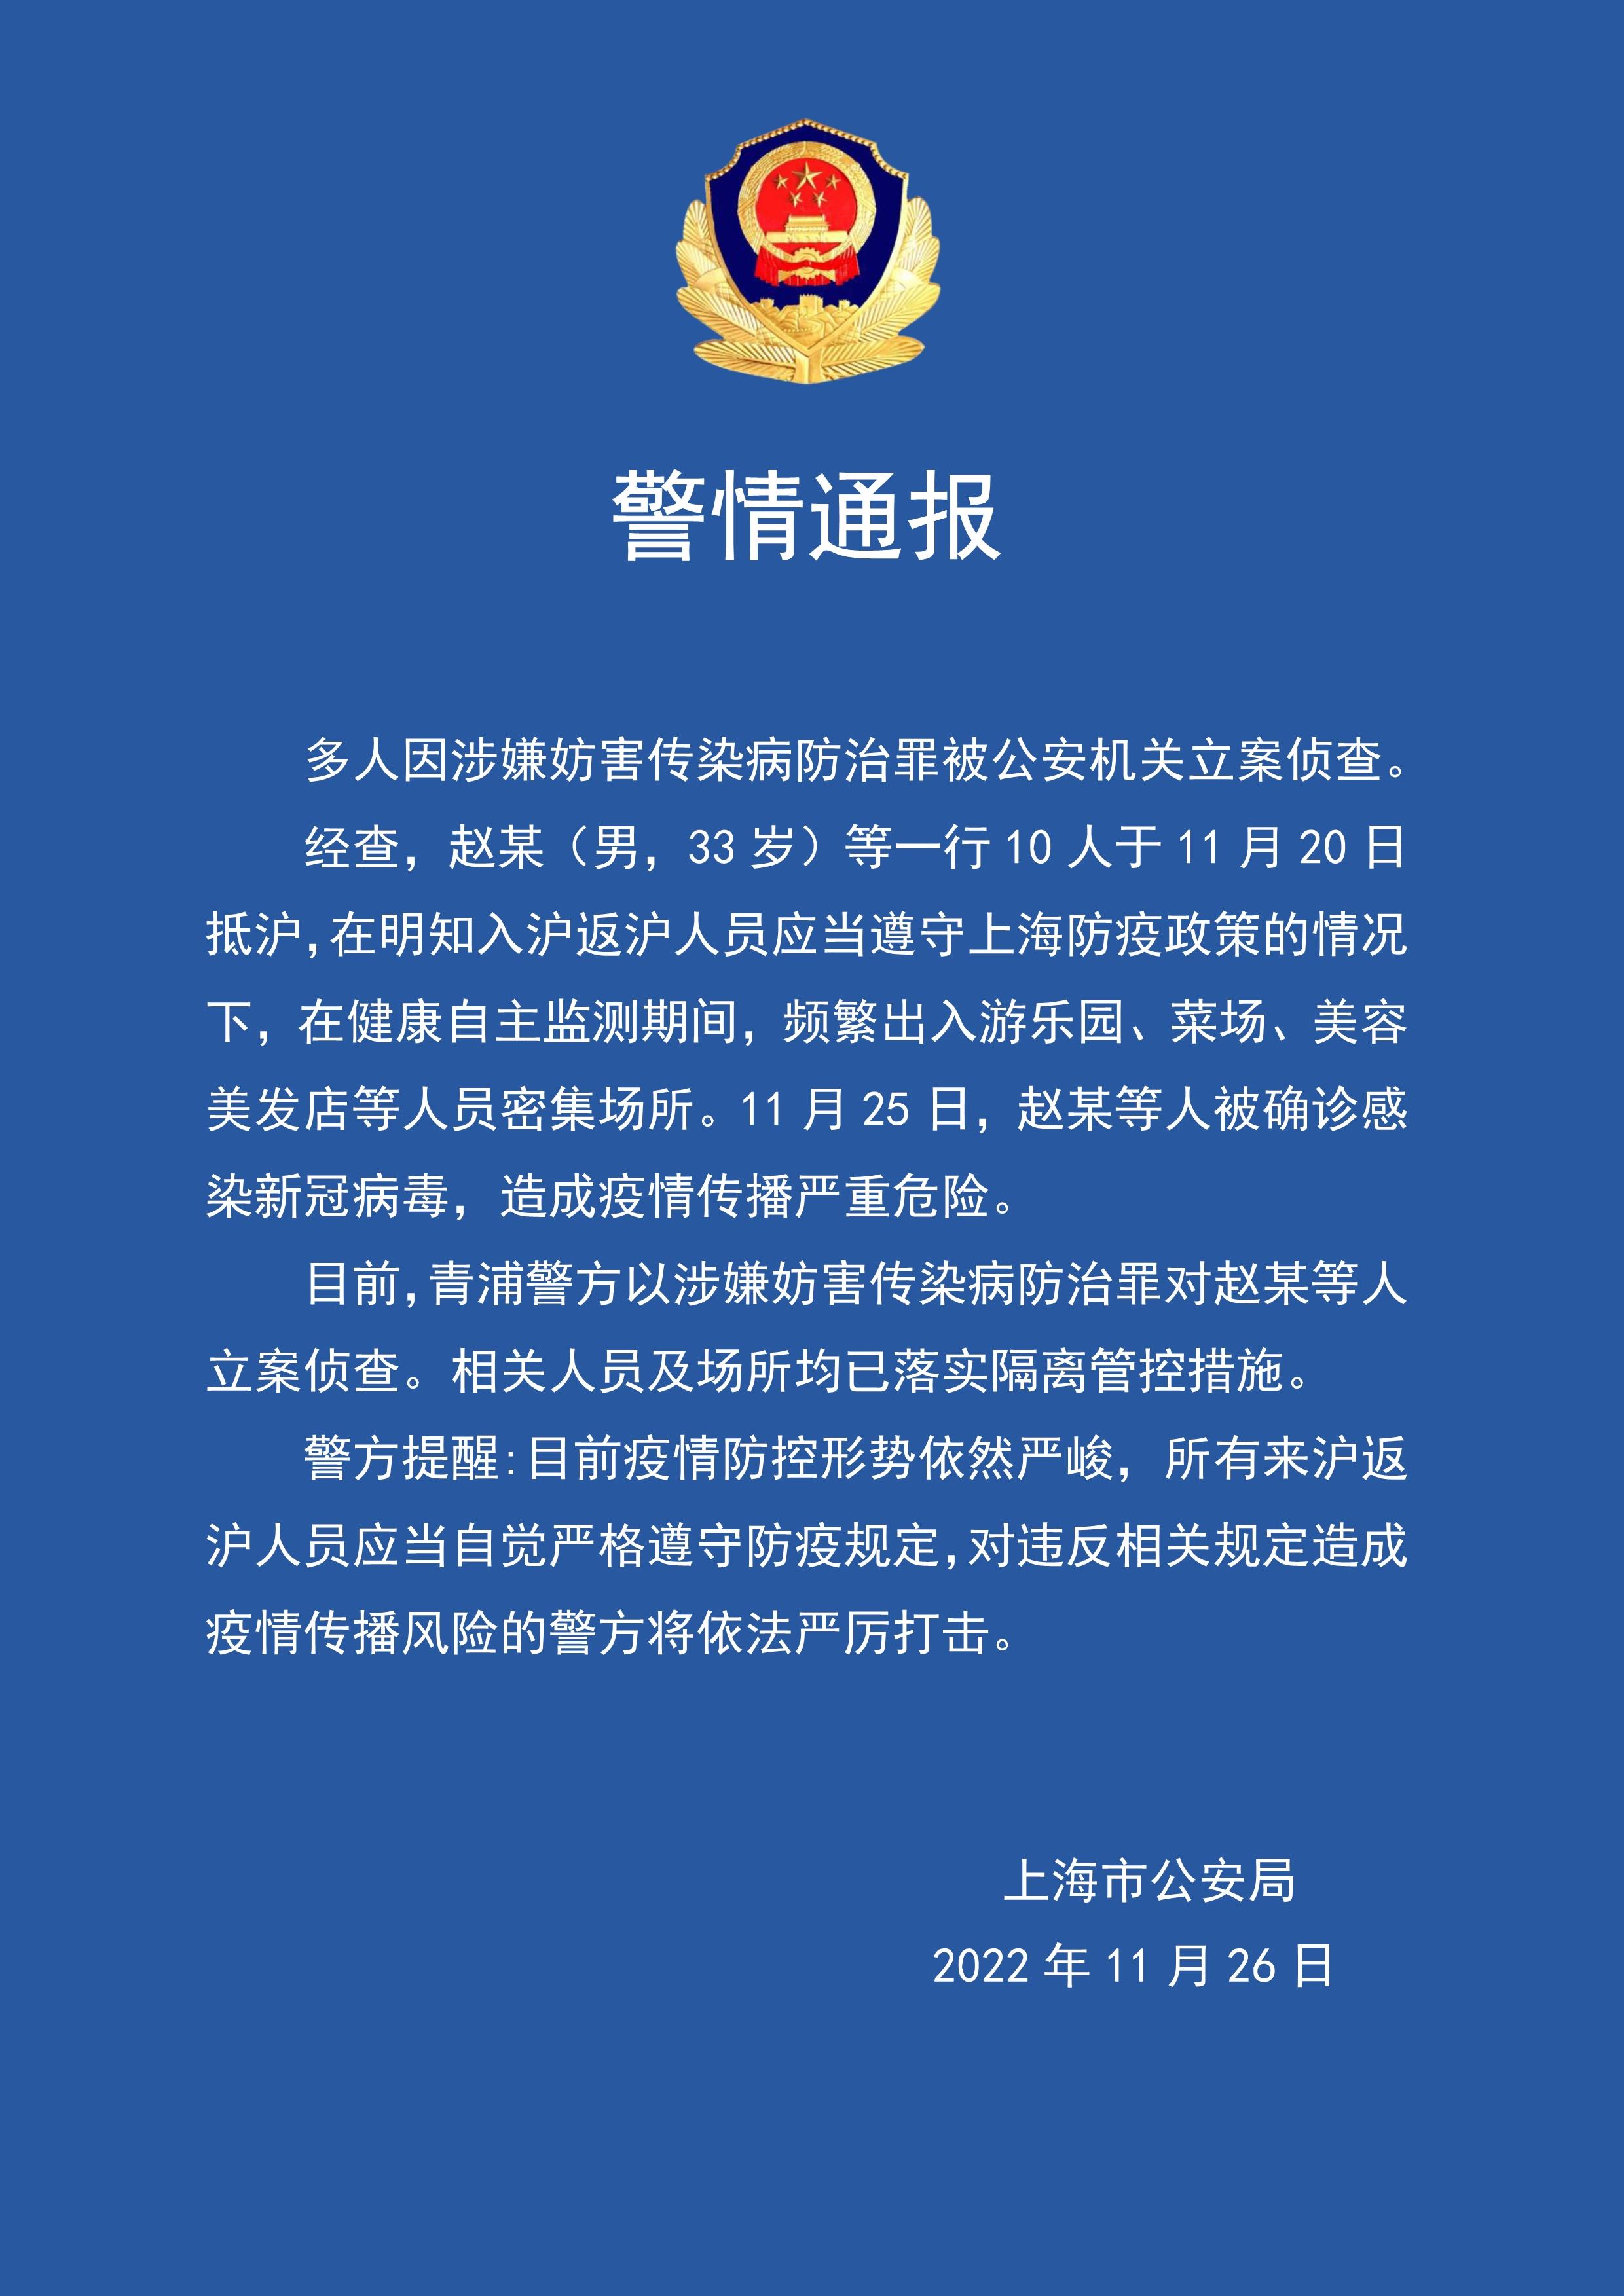 多人因涉嫌妨害传染病防治罪被上海警方立案侦查